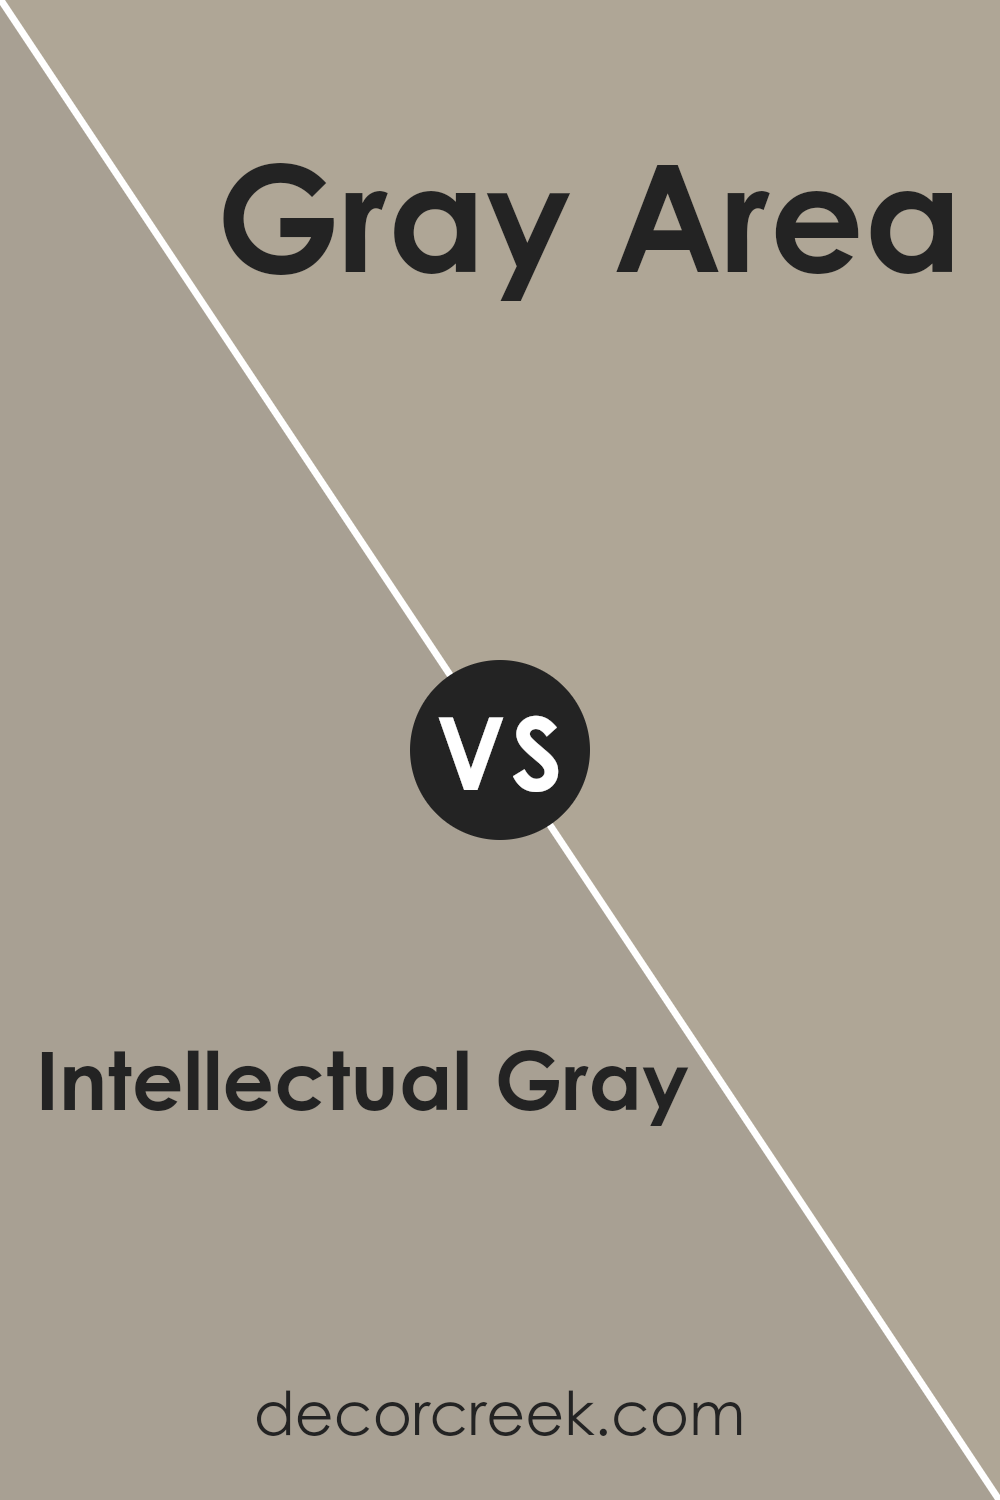 intellectual_gray_sw_7045_vs_gray_area_sw_7052